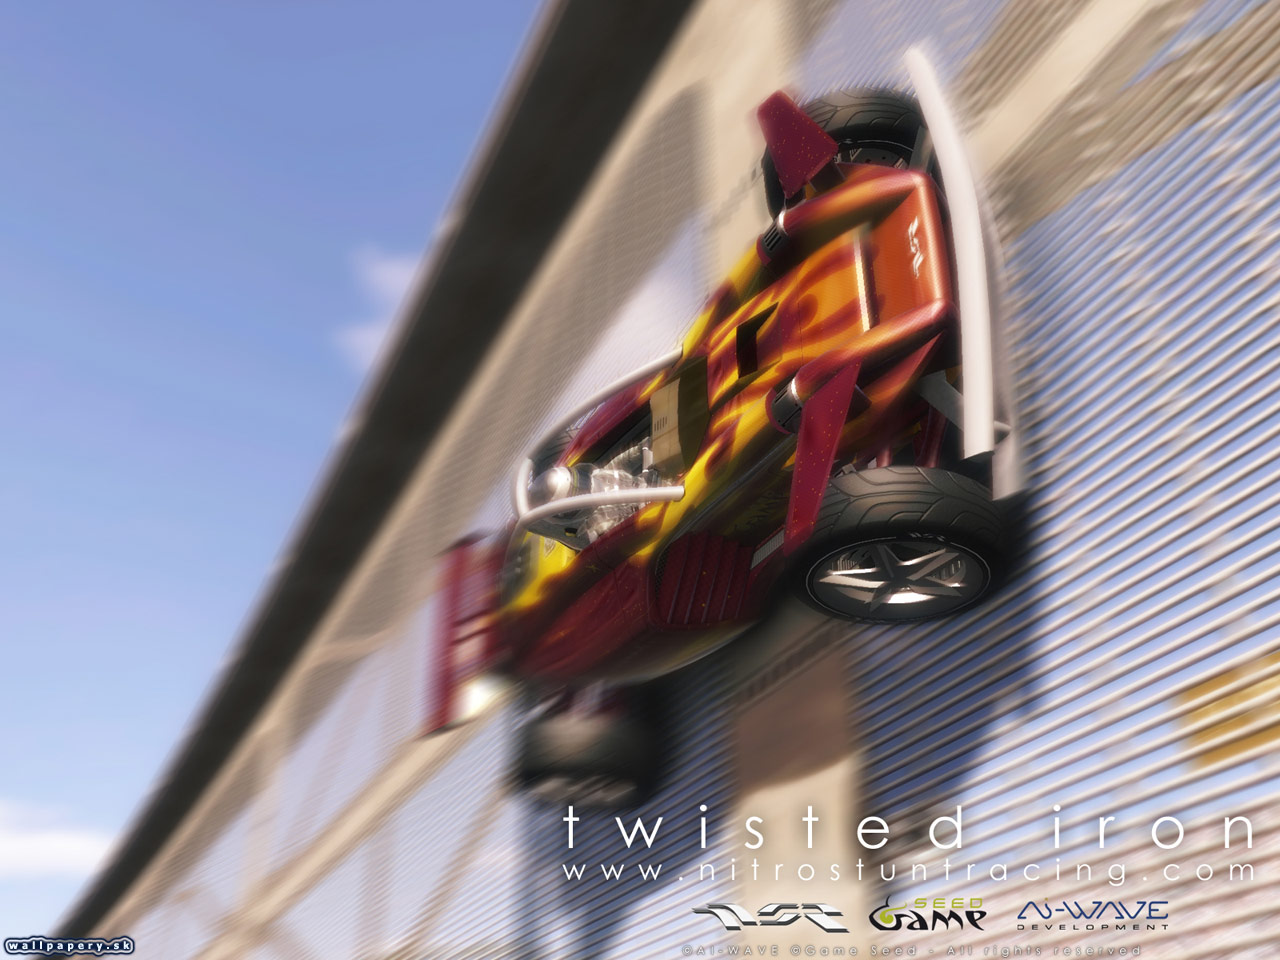 Nitro Stunt Racing - wallpaper 11